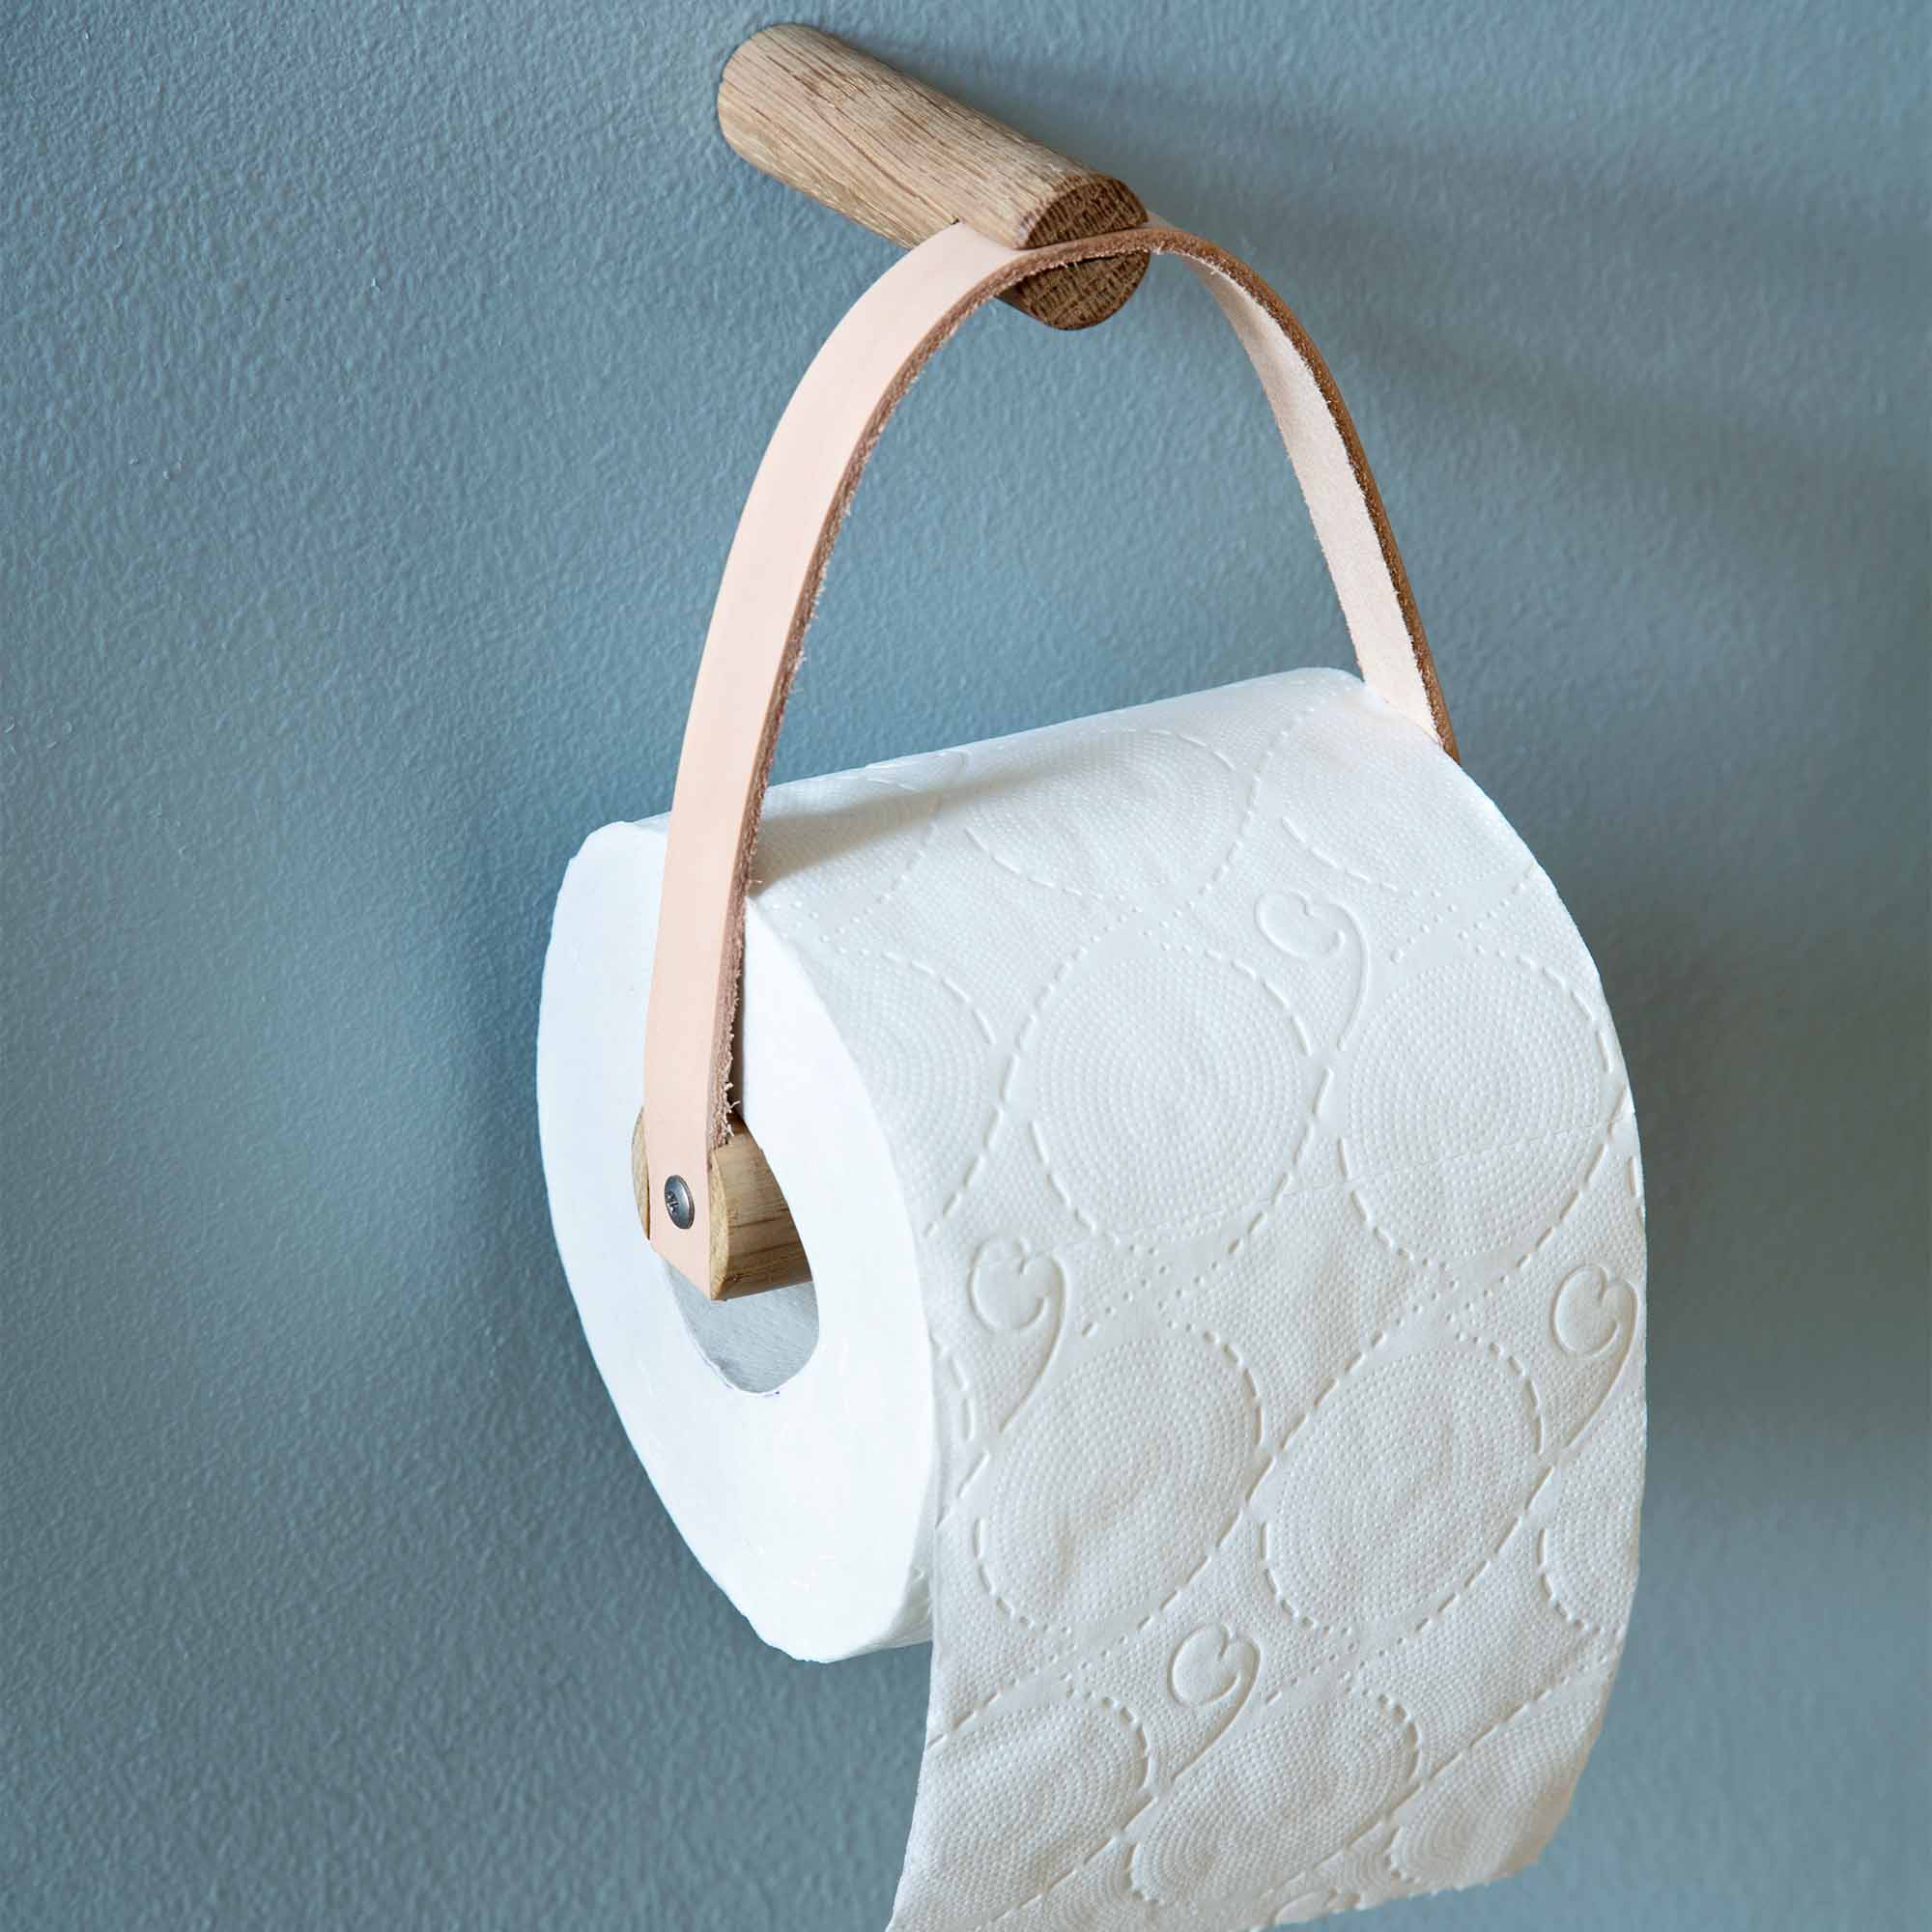 Support pour papier toilette chêne et cuir * By wirth